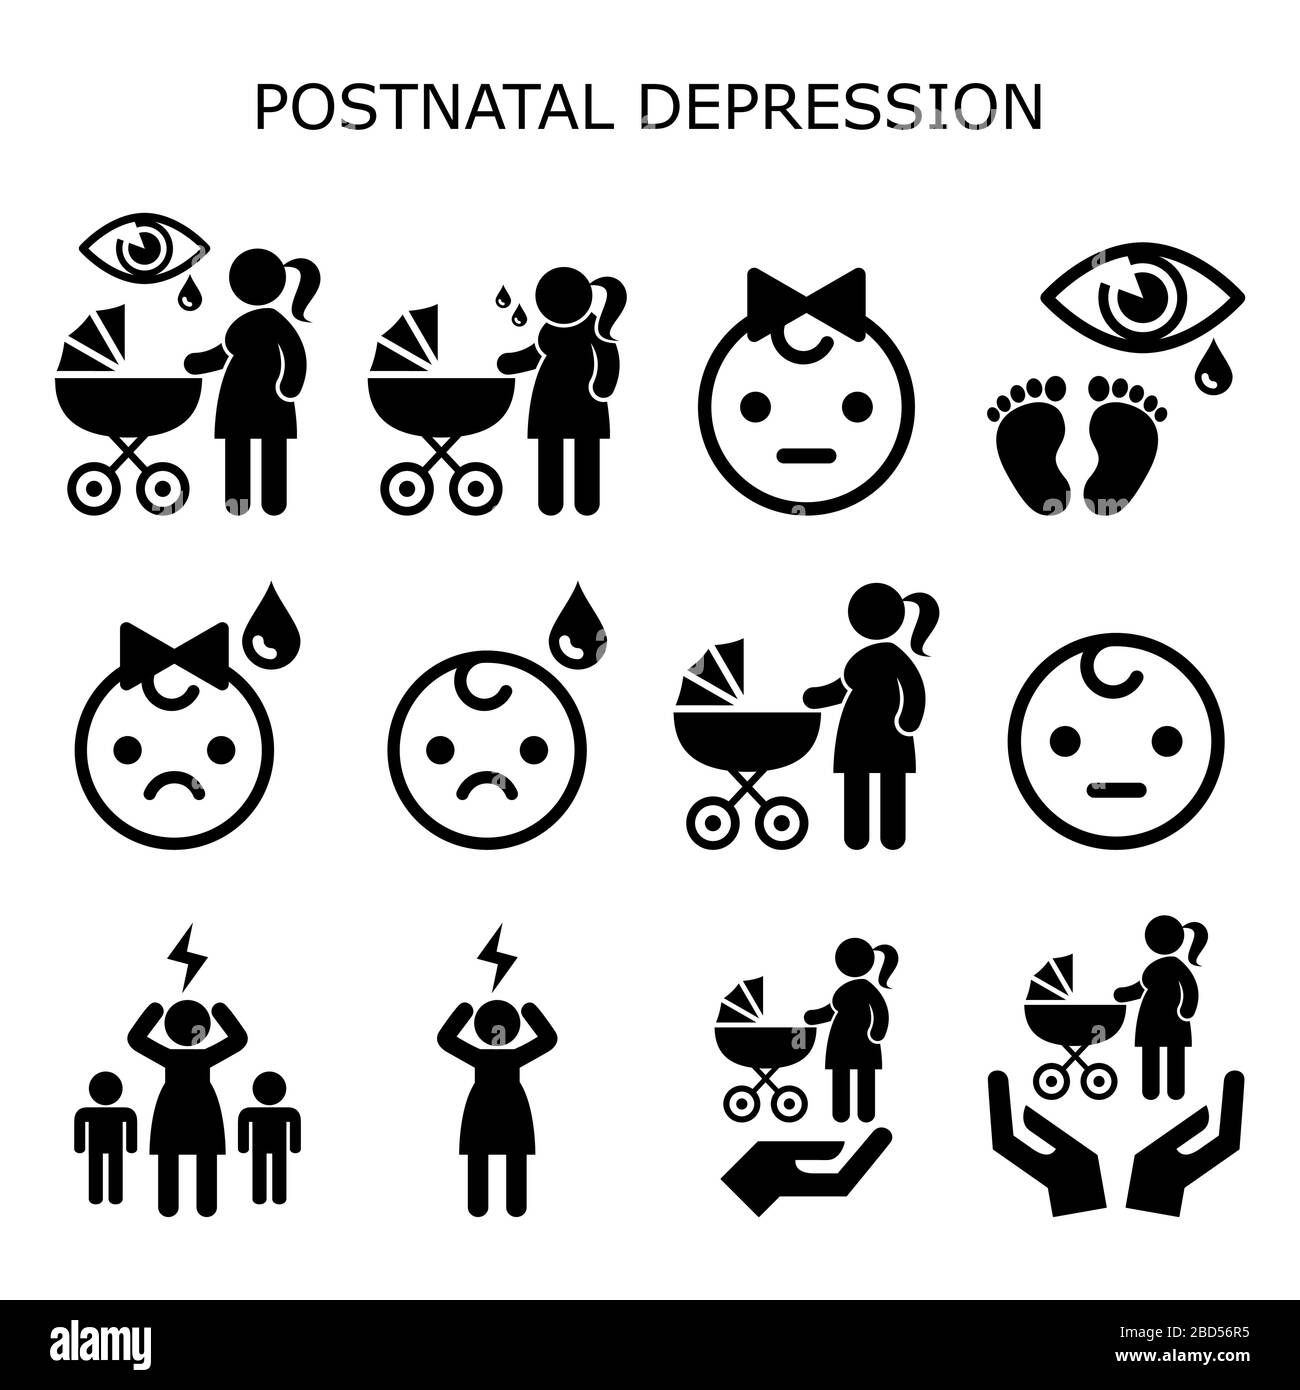 Depresión postnatal, depresión postparto vector conjunto de iconos - nuevas madres concepto de salud mental, las mujeres con recién nacido experimentando el blues del bebé Ilustración del Vector